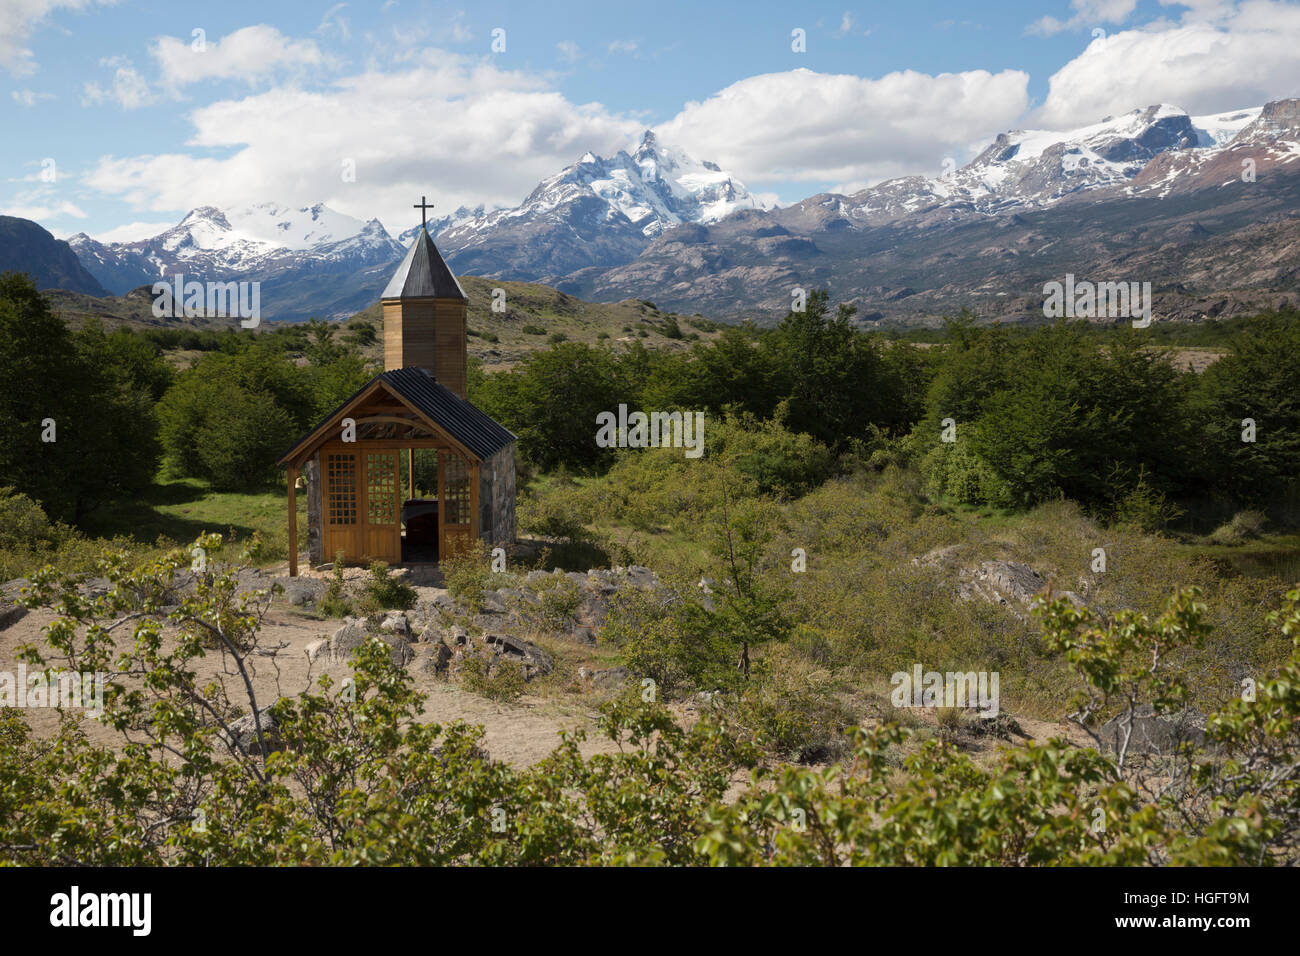 Chapel at Estancia Cristina, Lago Argentino, El Calafate, Parque Nacional Los Glaciares, Patagonia, Argentina, South America Stock Photo